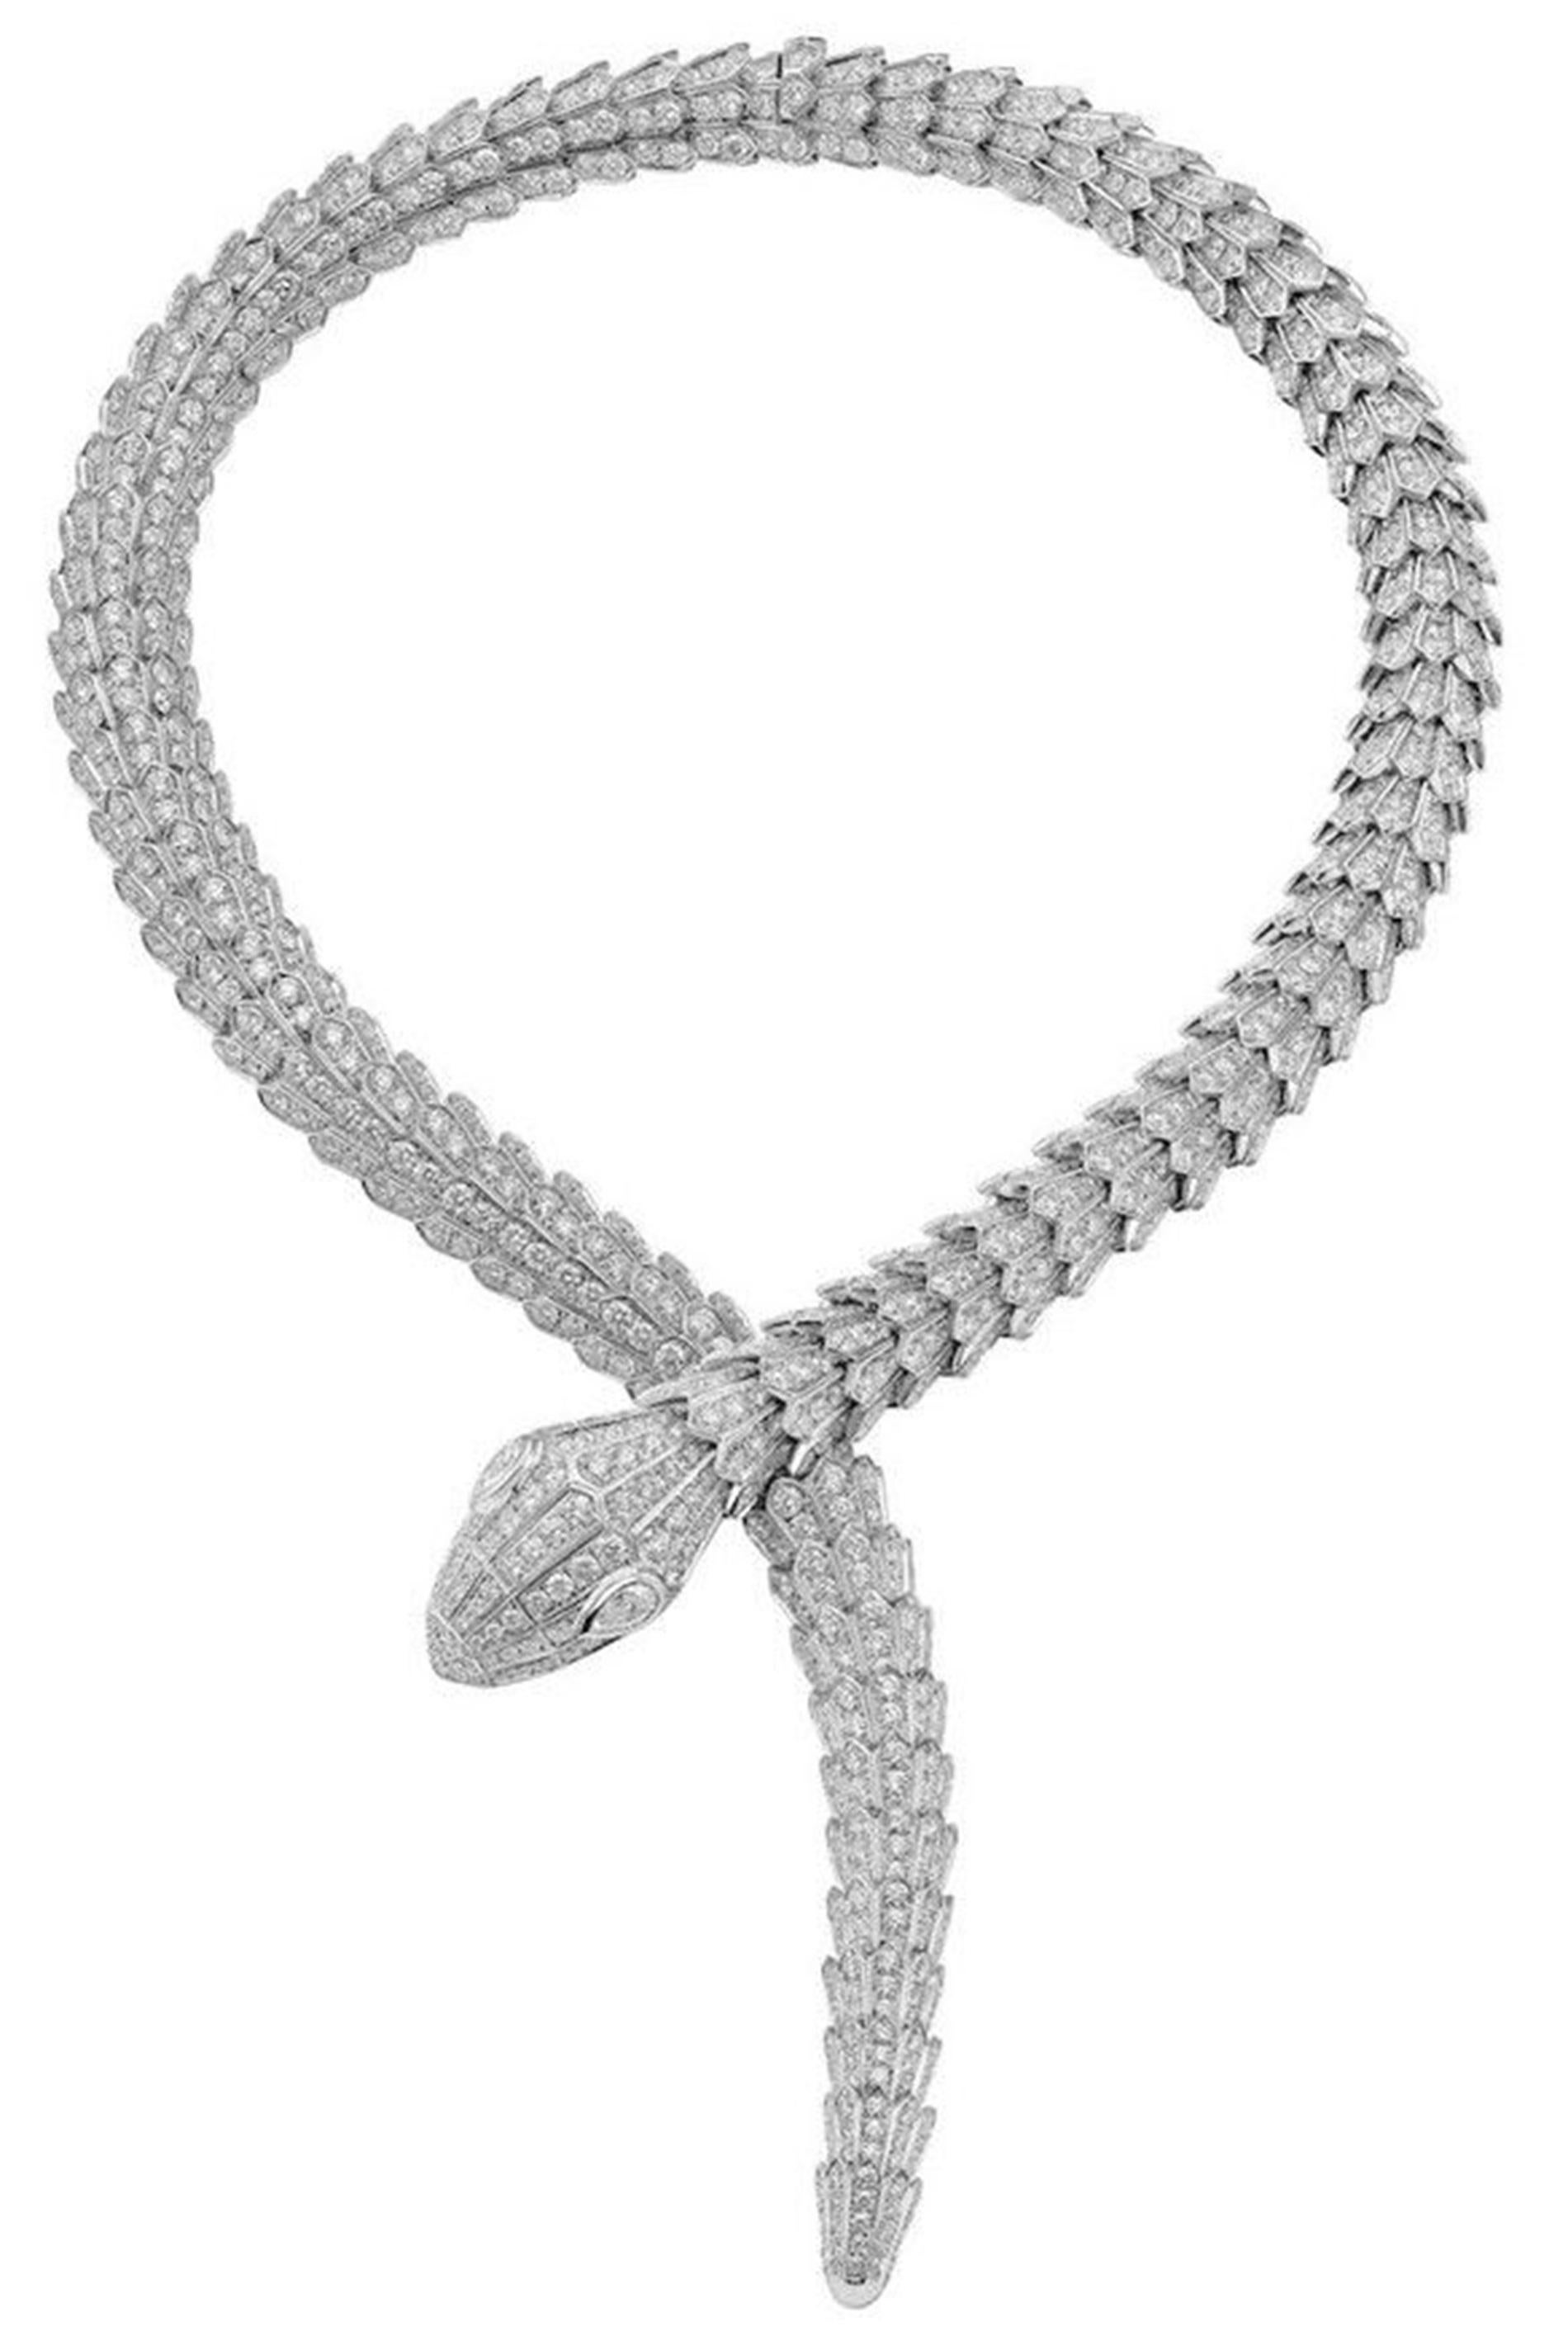 Entrez dans le monde de l'artisanat extraordinaire et de l'opulence avec le collier enveloppant Serpenti Diamond de Bvlgari, un chef-d'œuvre conçu dans les ateliers renommés de Bvlgari en Italie. Chaque nuance de ce collier reflète un travail